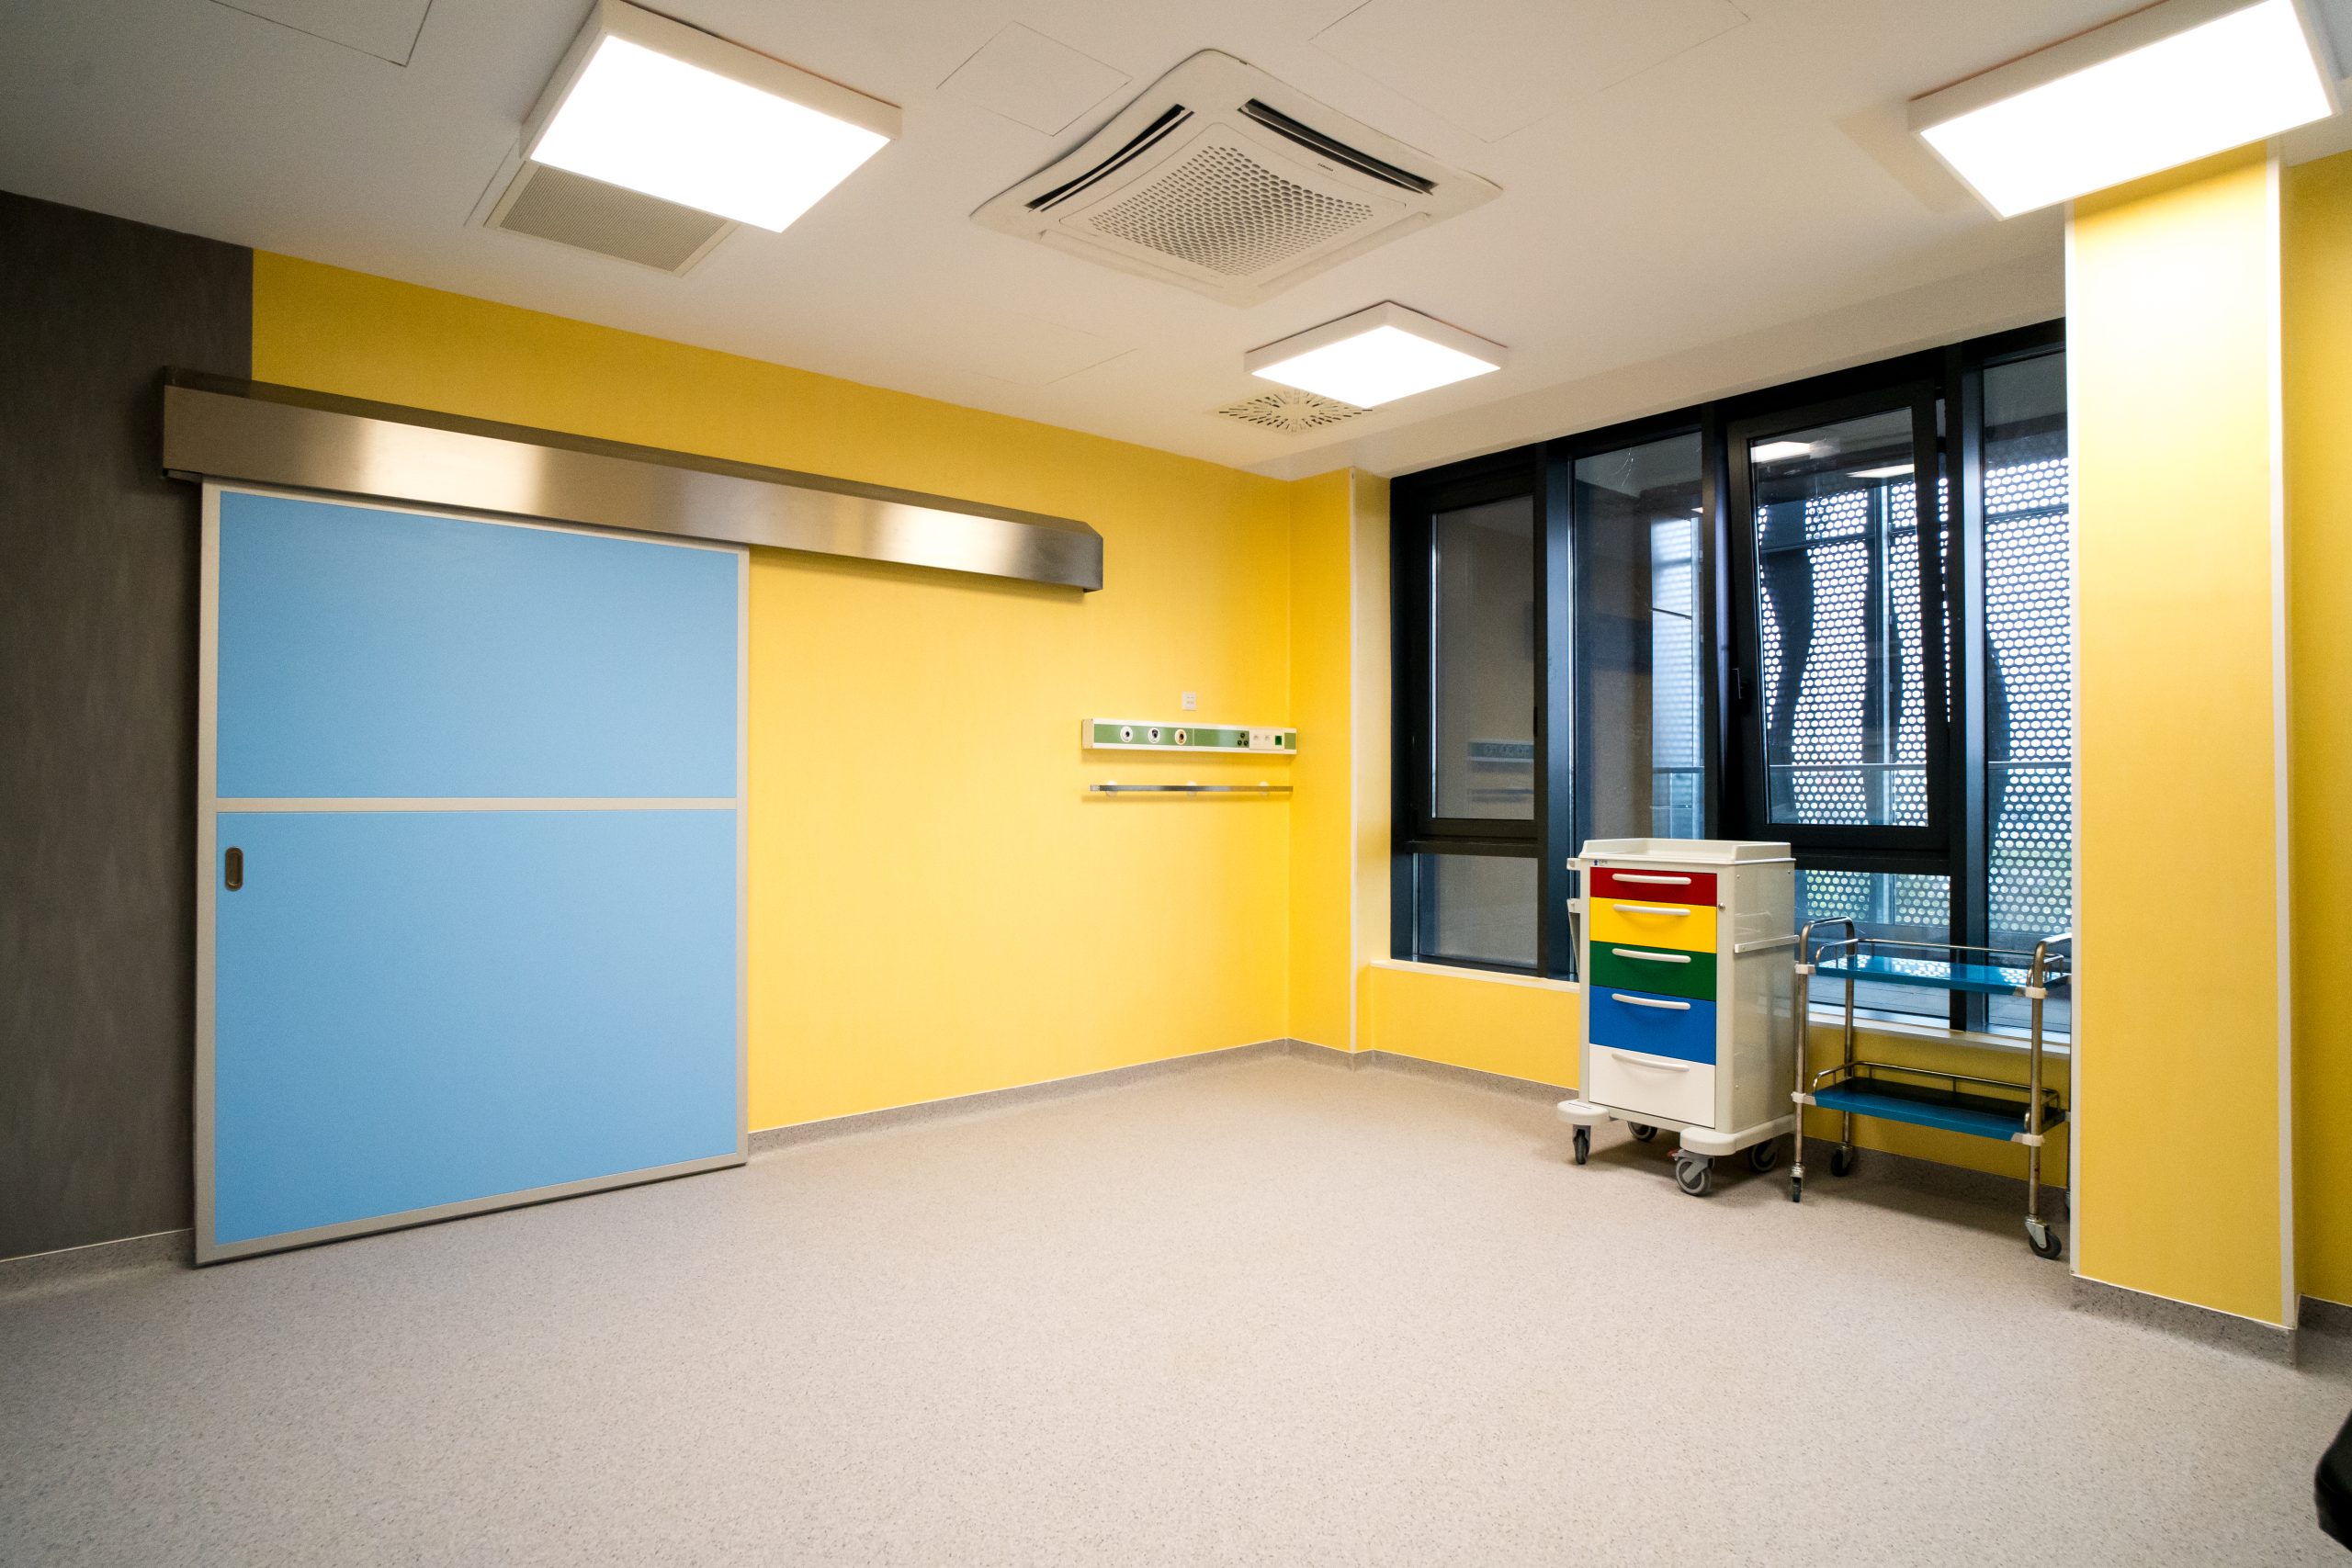 Noua clădire, concepută să ofere condiții optime pentru mame și nou-născuți, fiind prima unitate de acest gen inaugurată în Timișoara în ultimii 50 de ani. Cu o suprafață utilă de 5.400mp și 126 de paturi, maternitatea cuprinde, printre altele, compartimente de fertilizare în vitro, obstetrică-patologică, ginecologie, chirurgie laparoscopică şi histeroscopică, obstetrică fiziologică şi de spitalizare de zi. Totodată, are prevăzute şi compartimente de terapie intensivă, prematuri, nou-născuţi eutrofici, o secţie ATI, bloc operator, săli de naşteri şi camere de gardă.